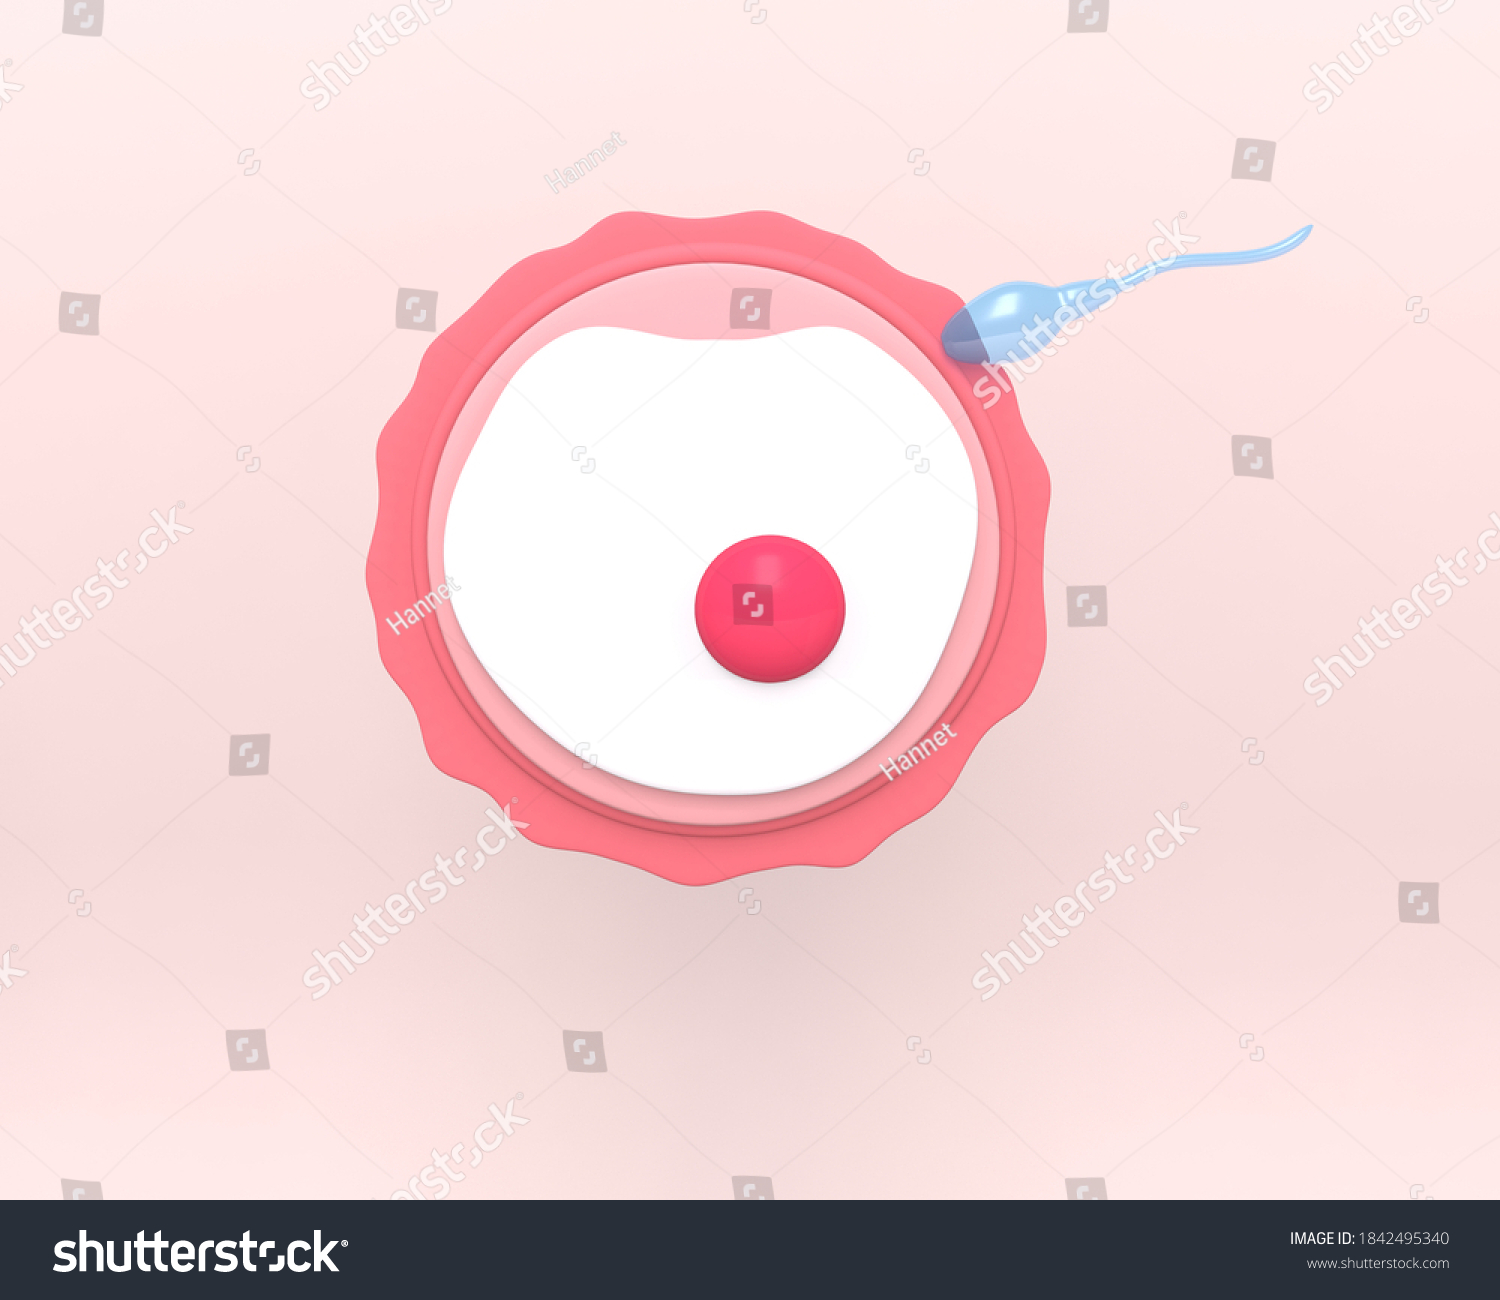 Ovule Sperm Female Fertility Cell Oocyte Stock Illustration 1842495340 Shutterstock 